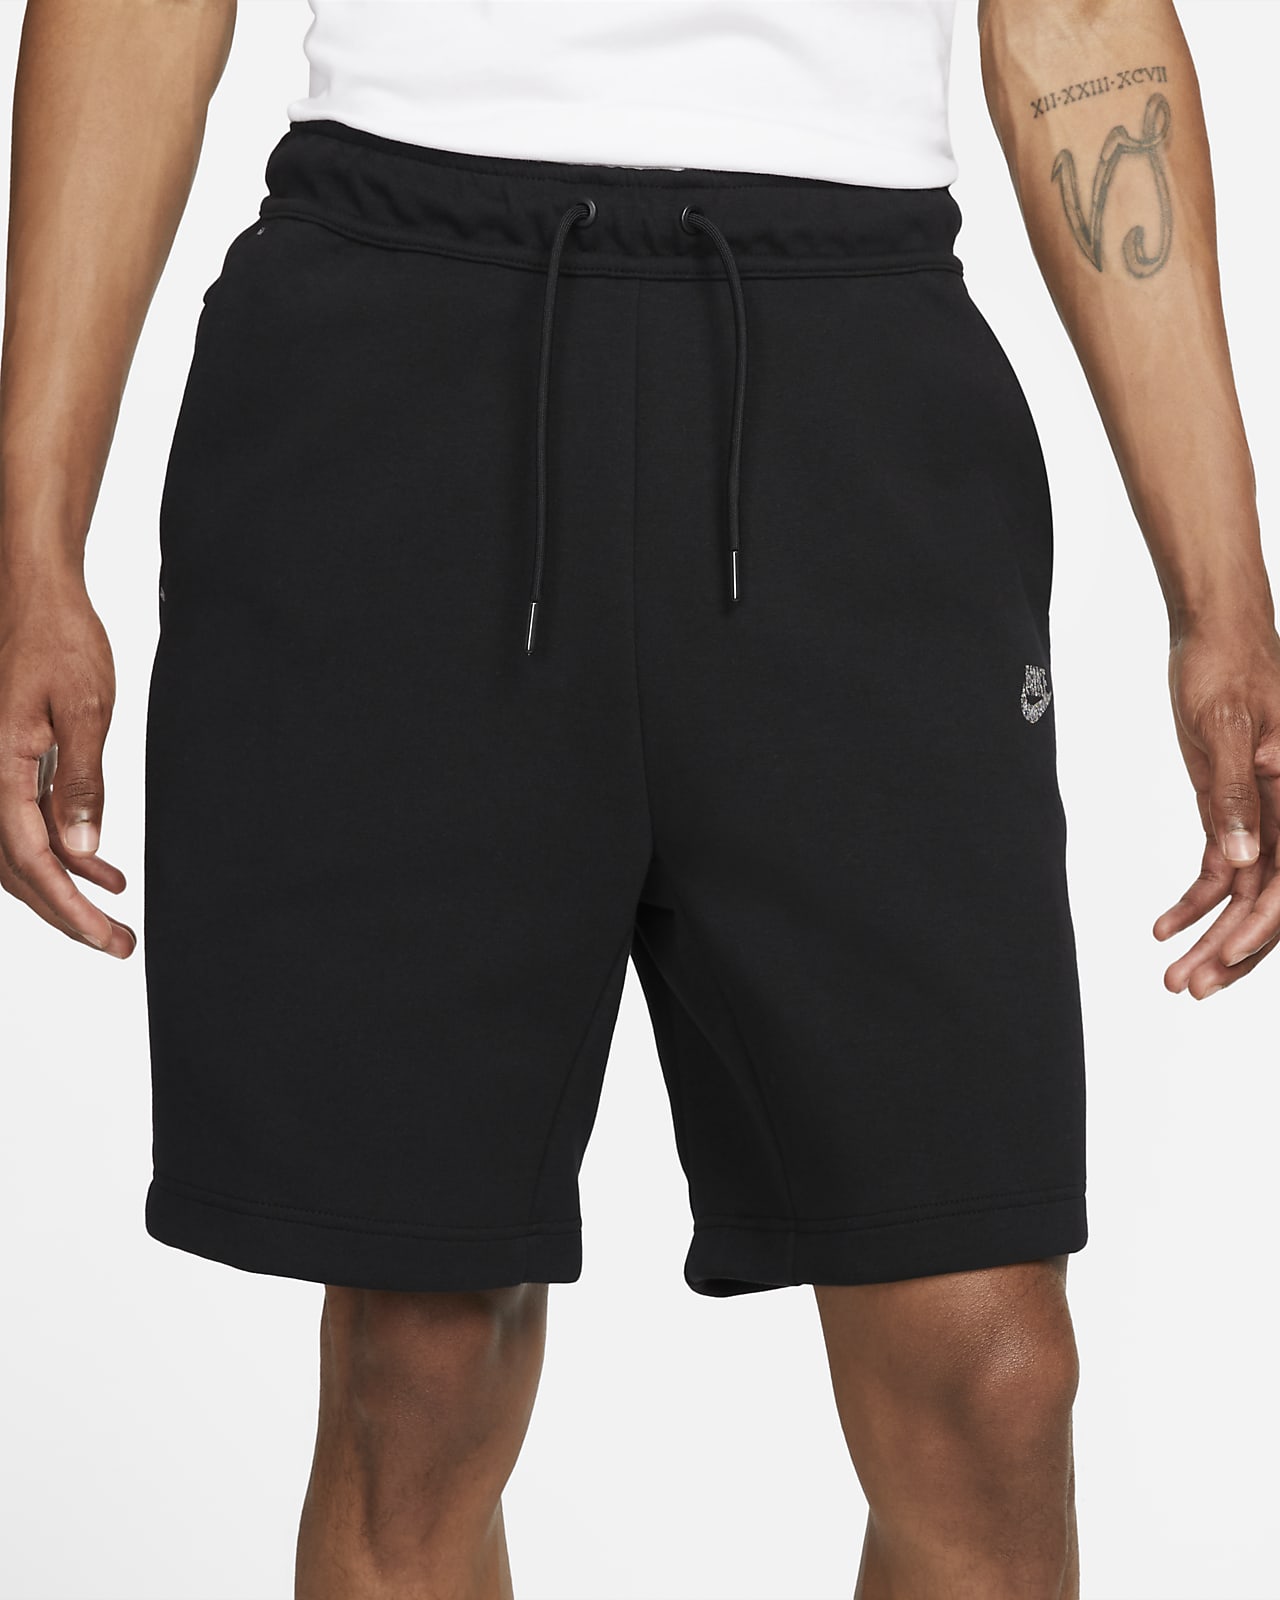 nike men's sportswear tech fleece shorts stores